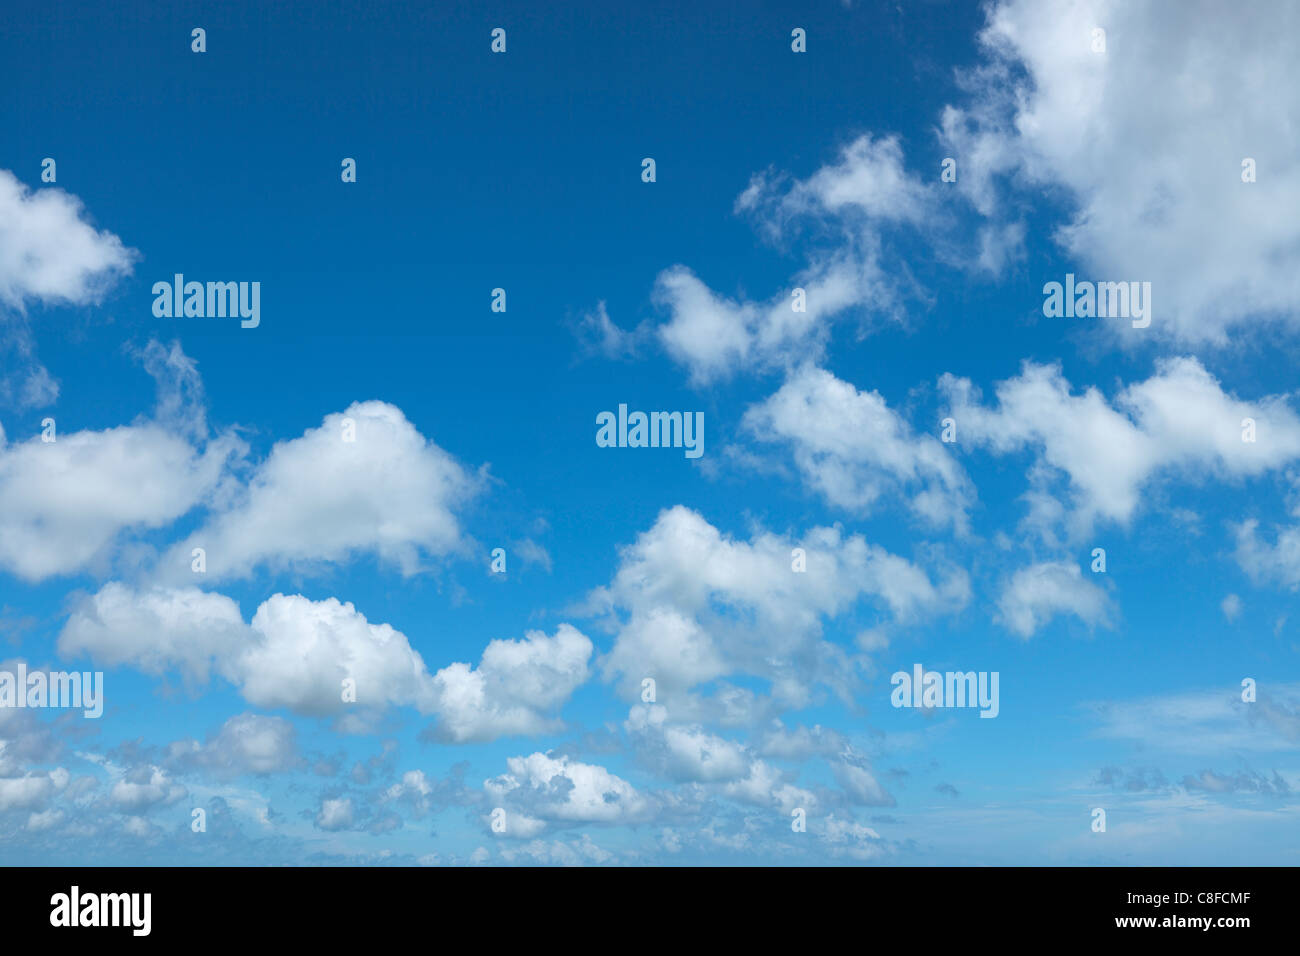 43,5 Mpix bellissimo sfondo con cielo nuvoloso. Fatta da diversi scatti, nessuna interpolazione utilizzato. Foto Stock